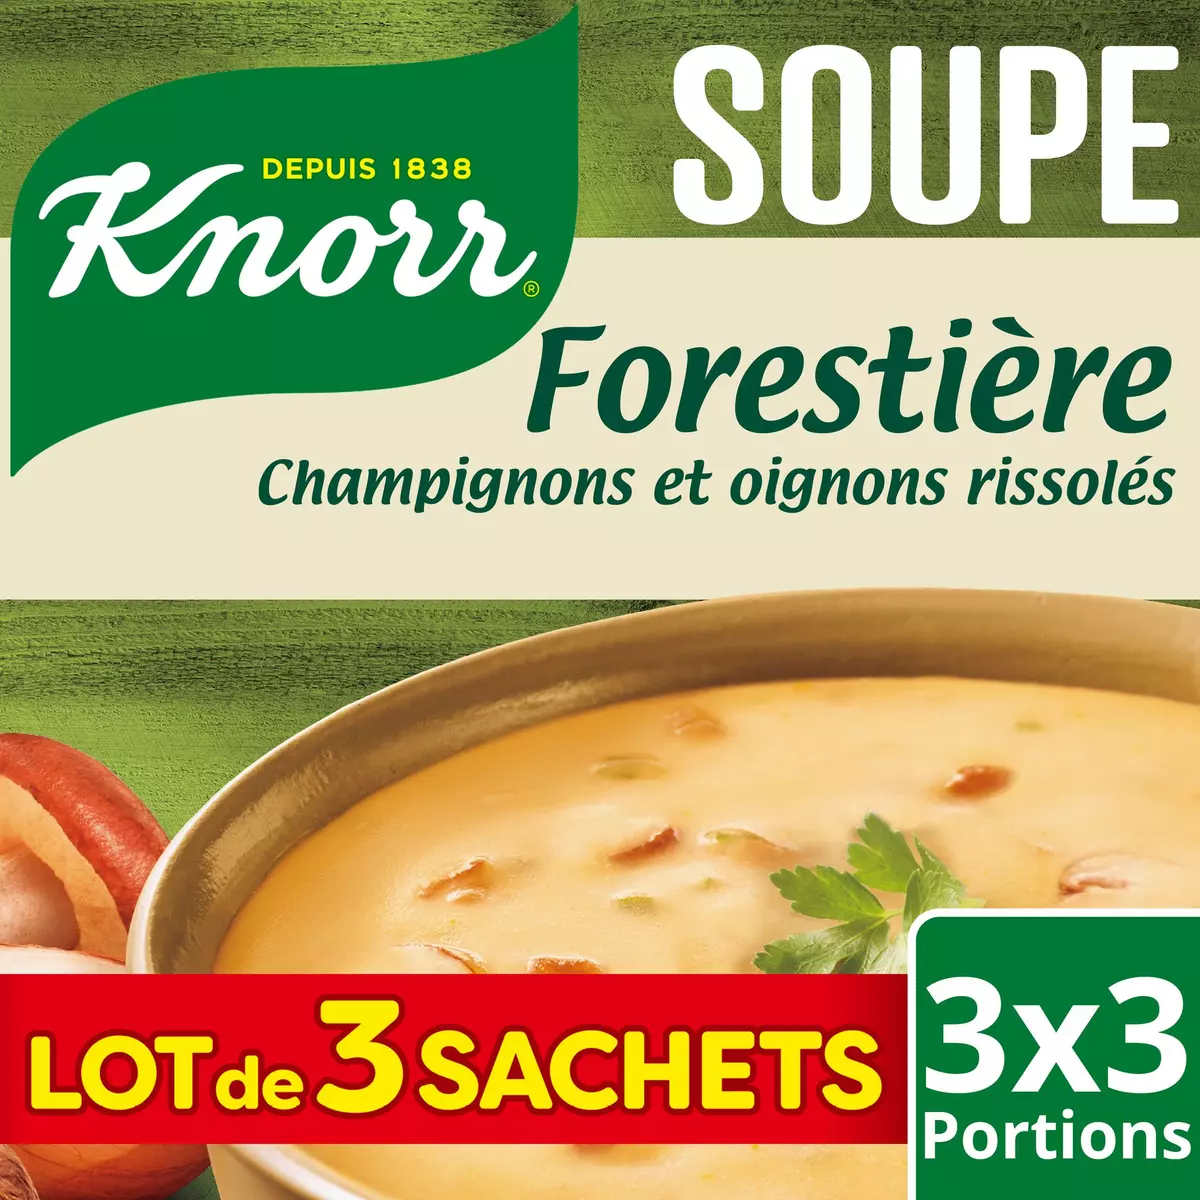 KNORR Soupe déshydratés forestière champignons et oignons rissolés 3 sachets 255g